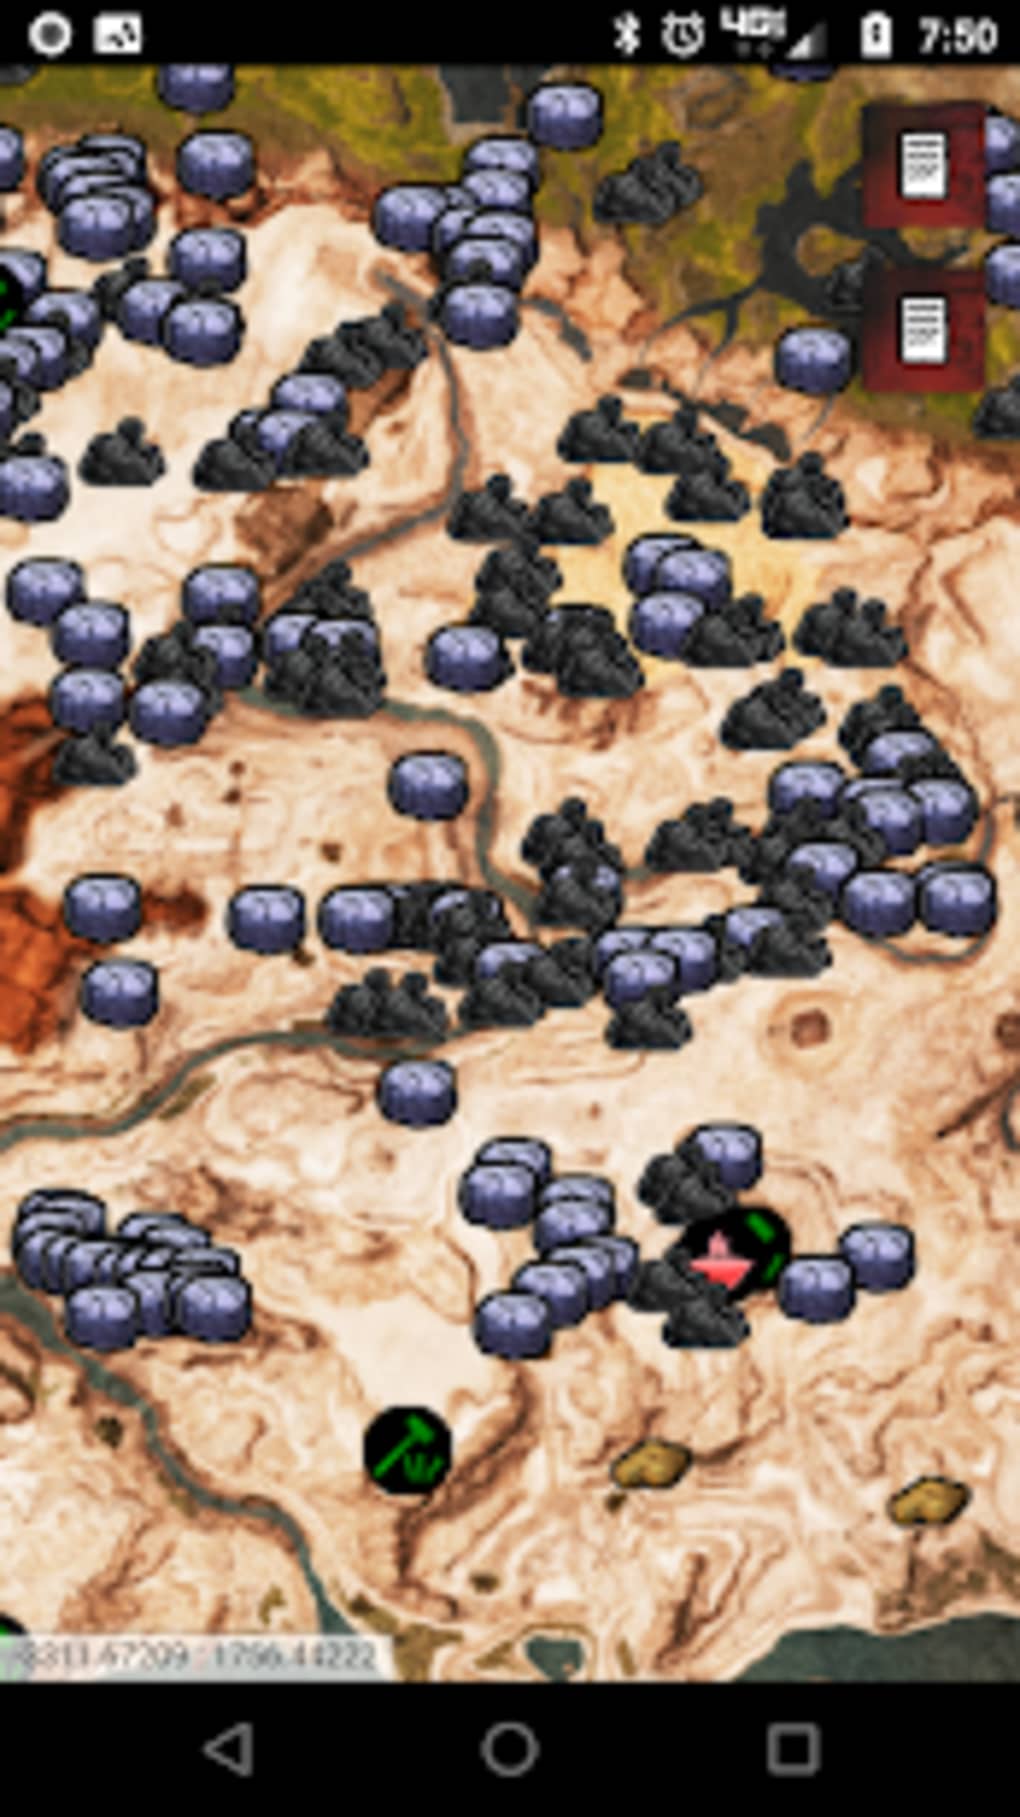 silver conan exiles interactive map